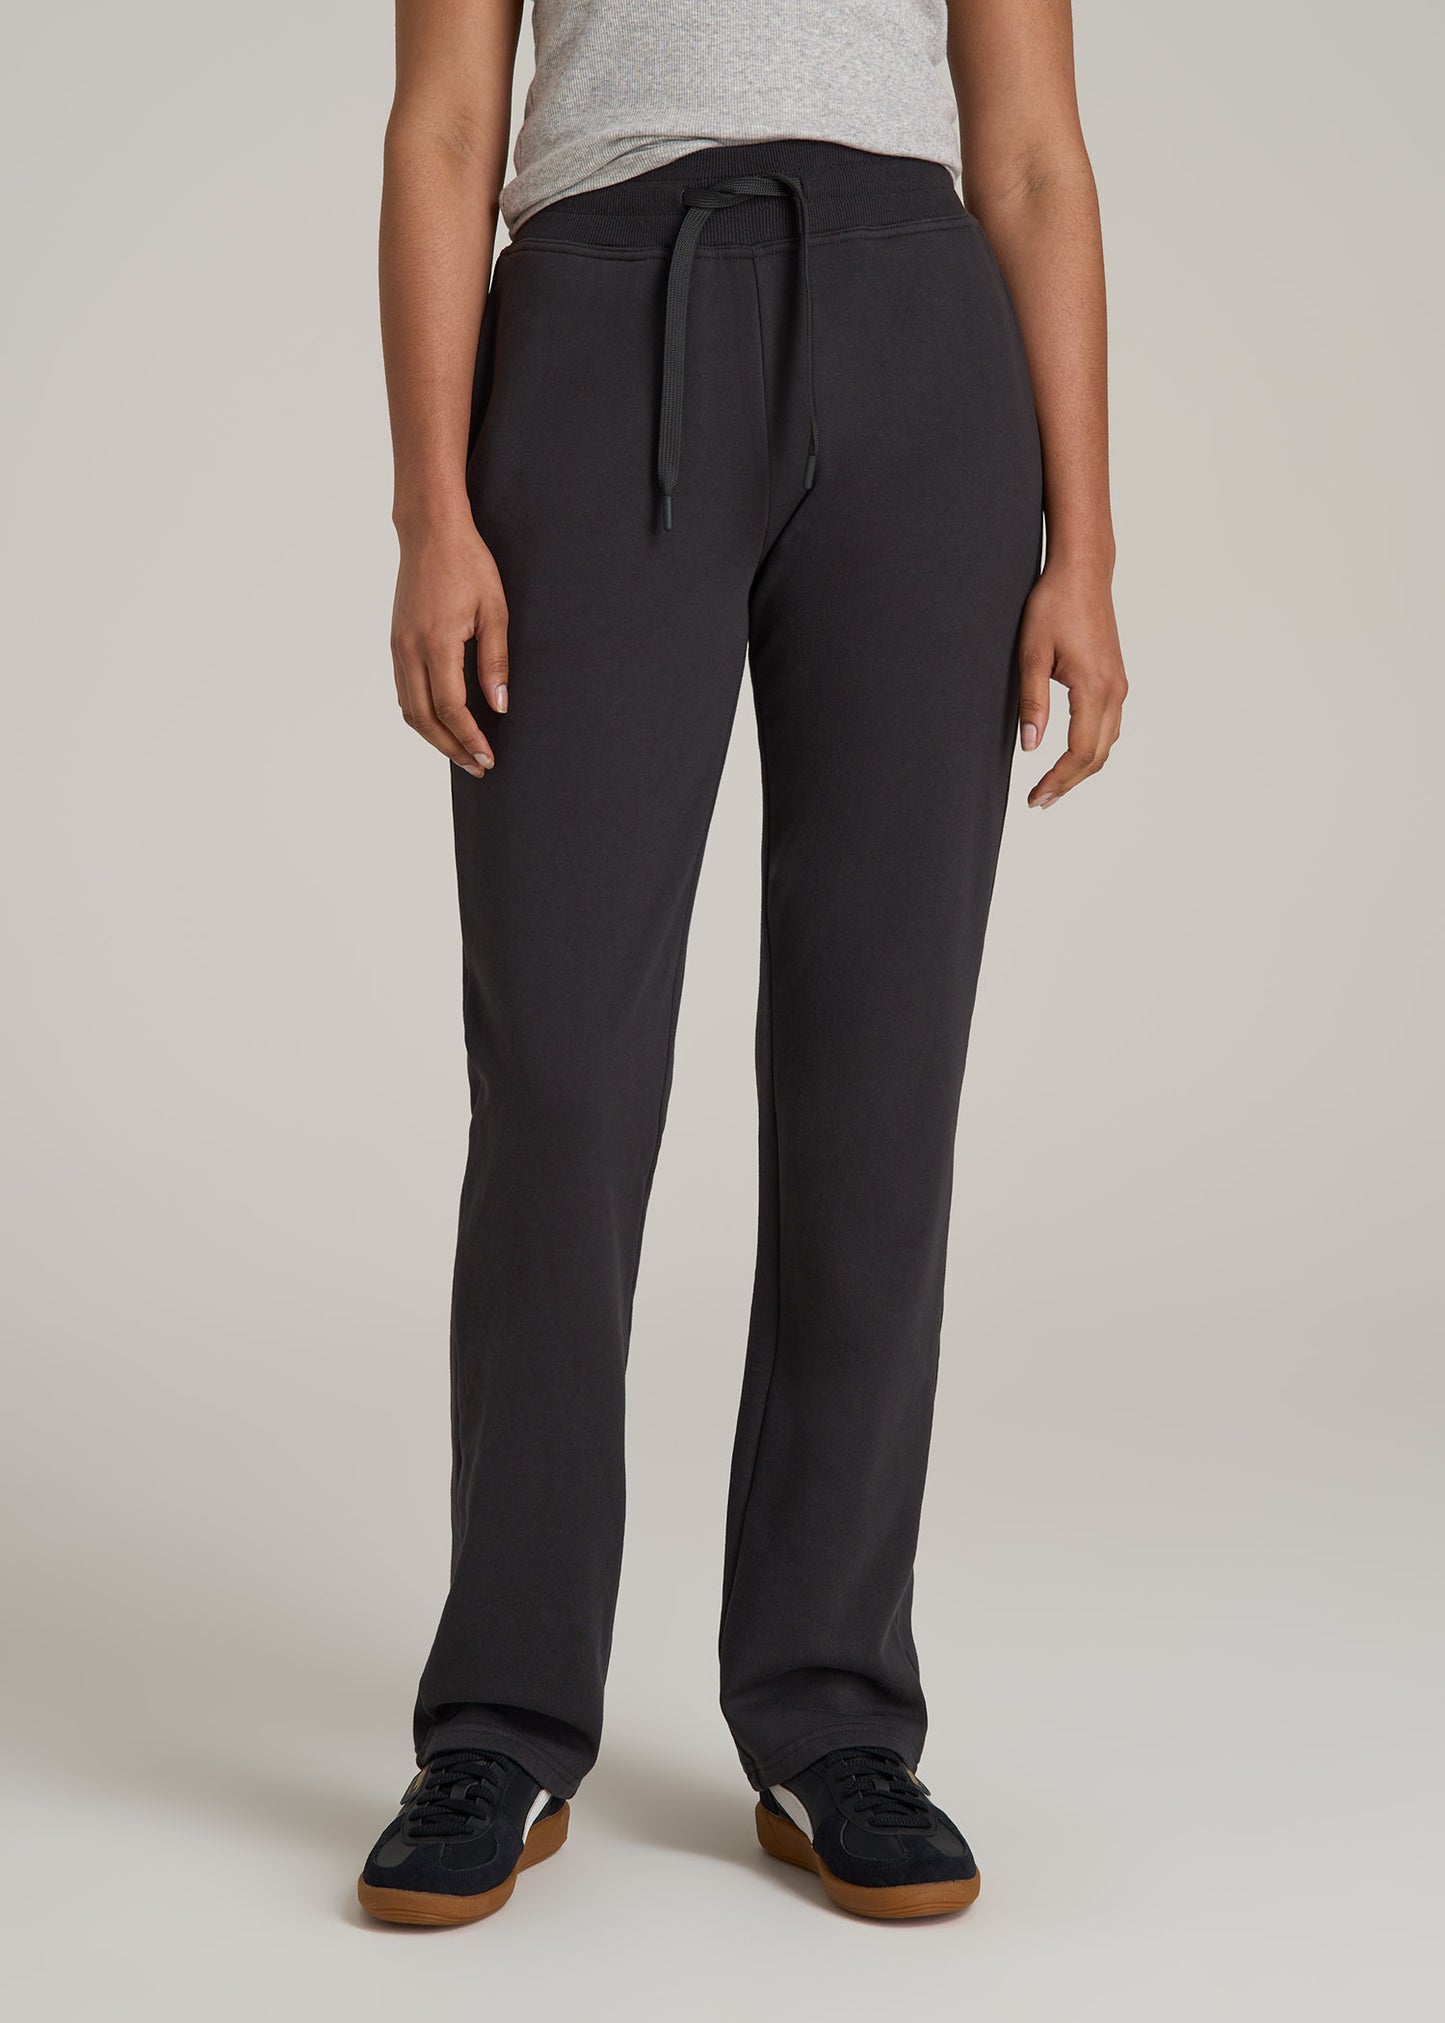 Wearever Fleece Open-Bottom Sweatpants for Tall Women in Graphite Black